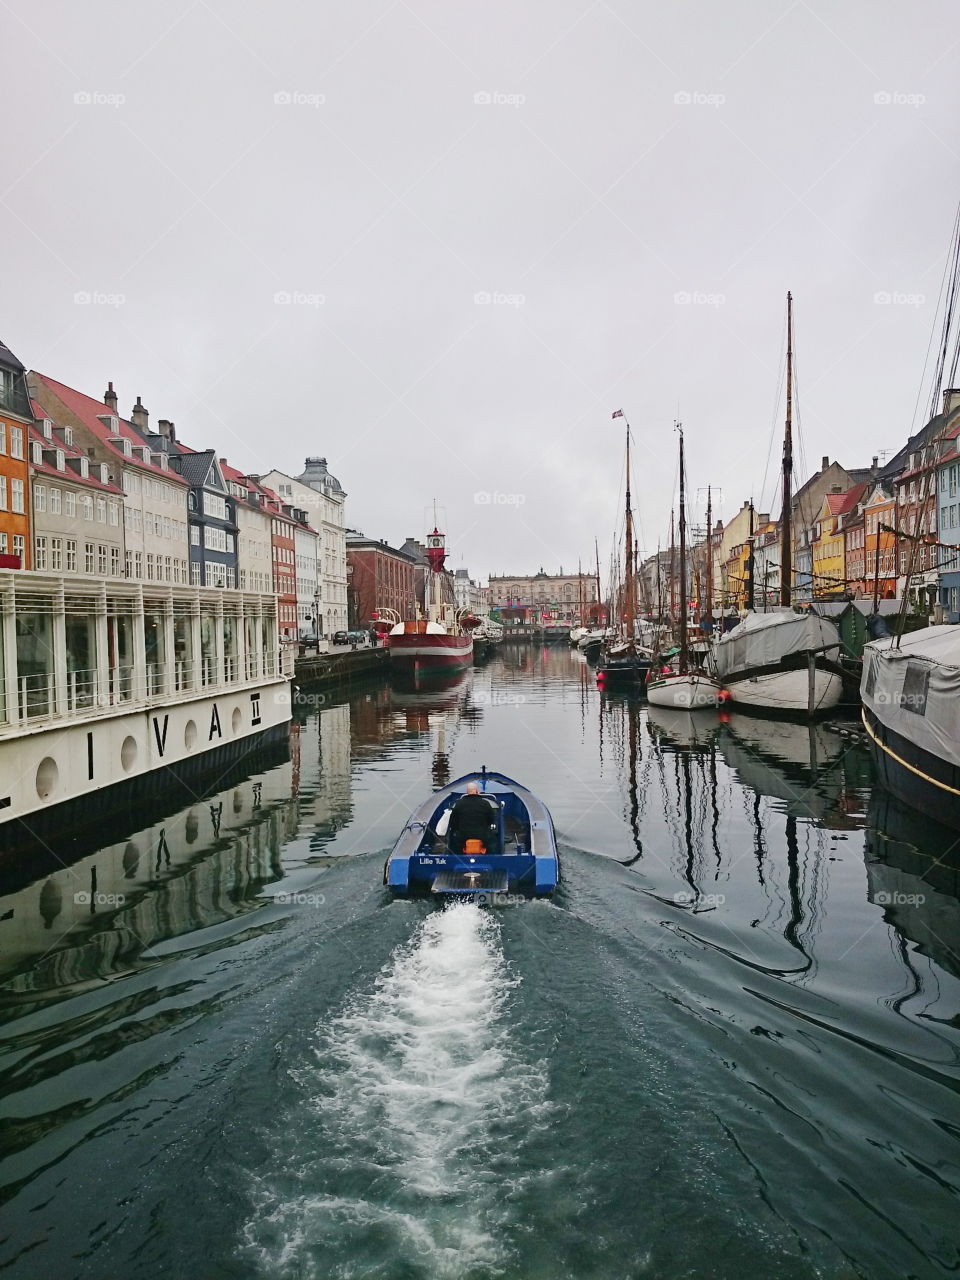 boating in Nyhavn. Copenhagen Denmark, December 2014